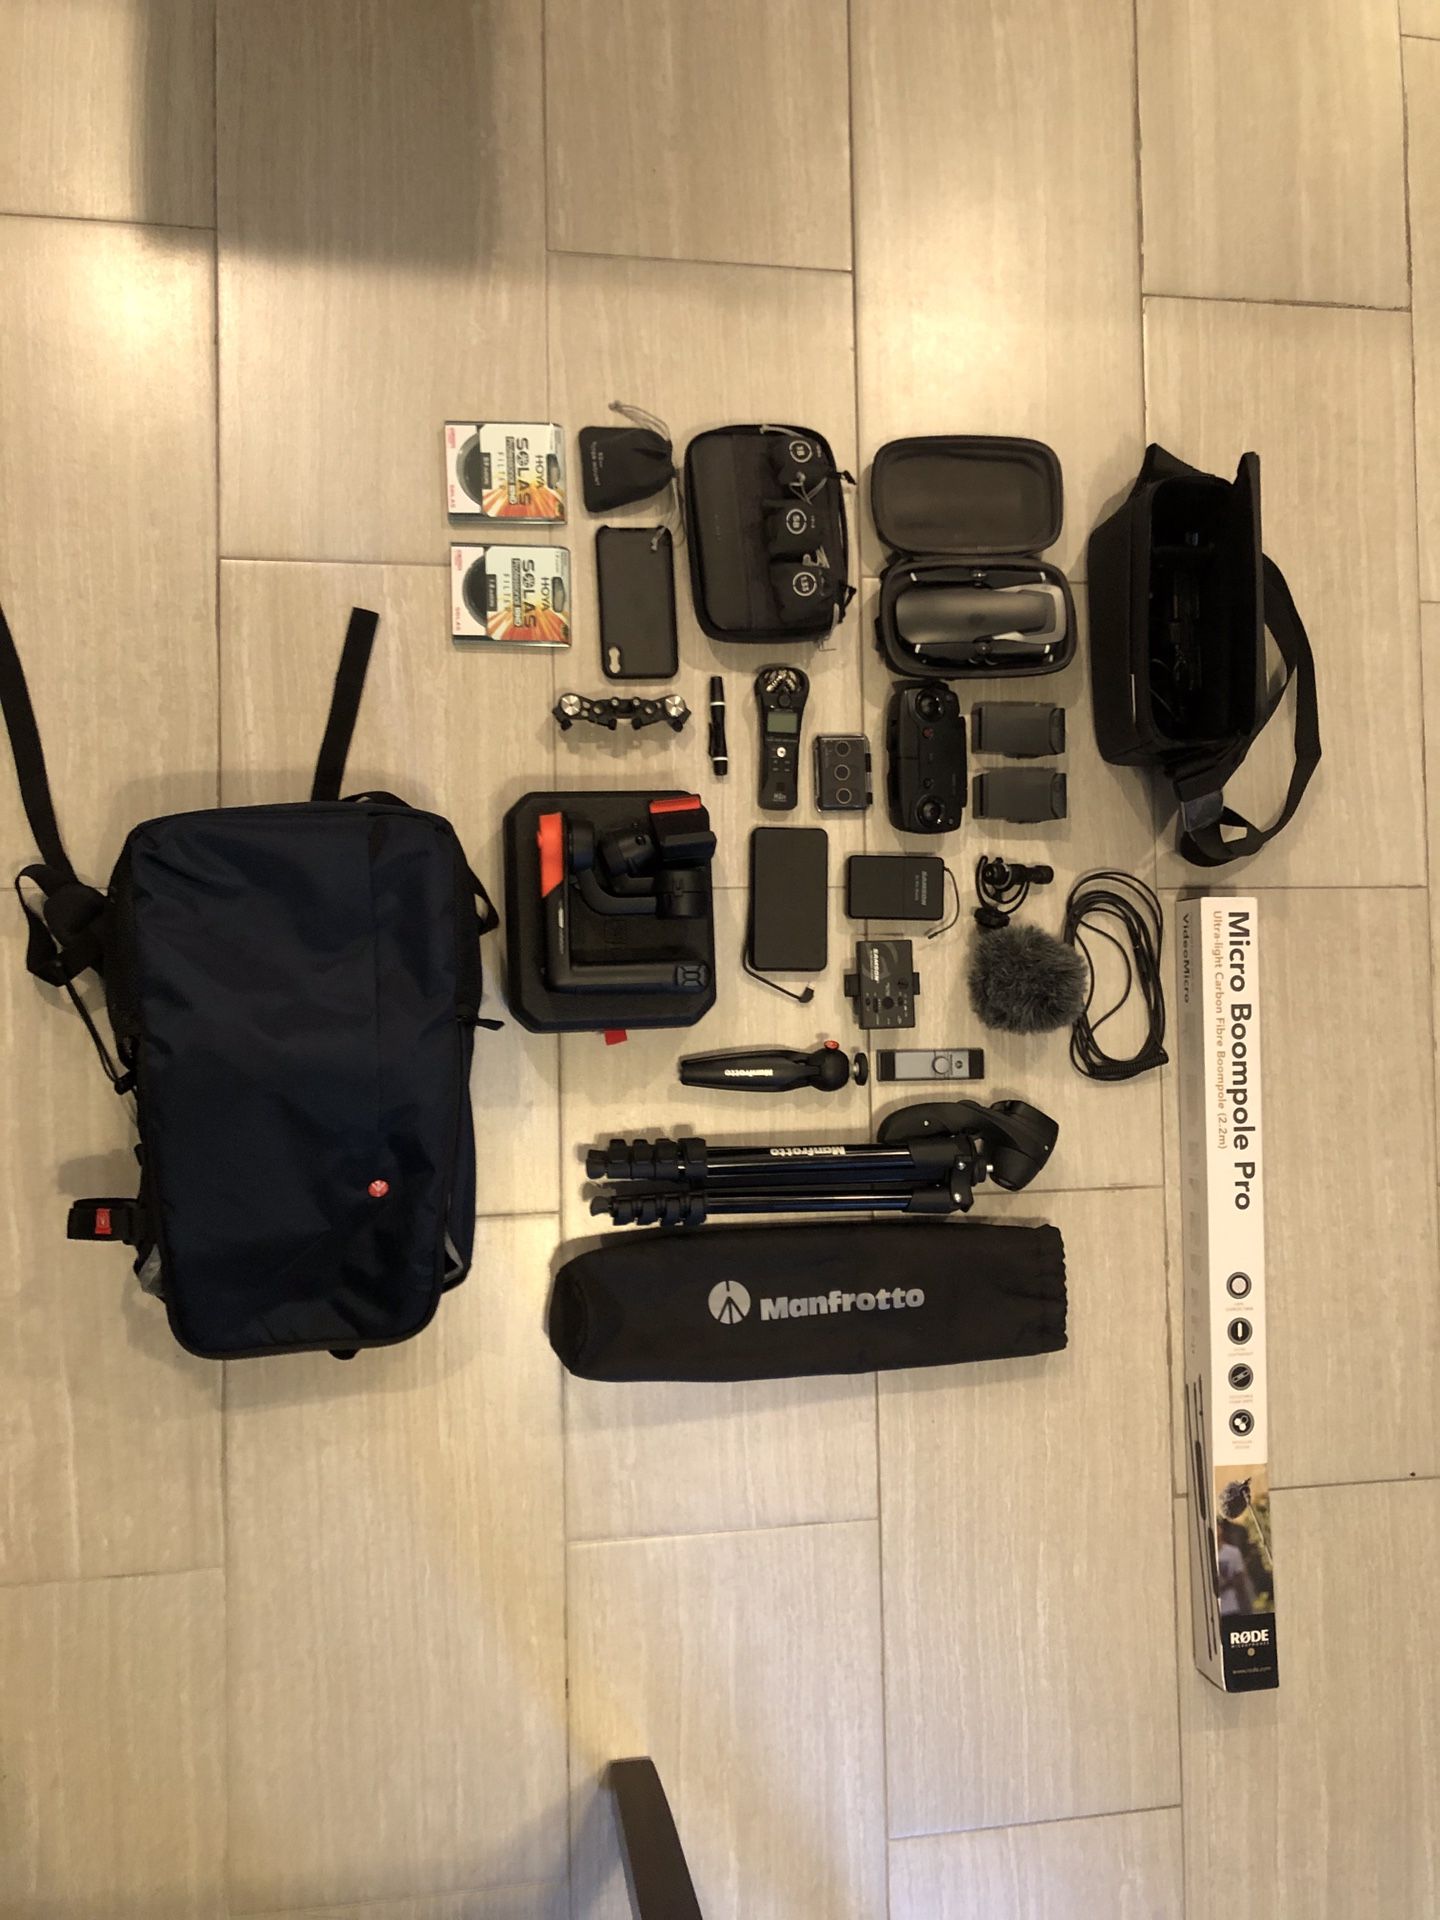 Manfrotto camera bag w tripods, lenses, mavic drone, etc. *SEE DESCRIPTION*